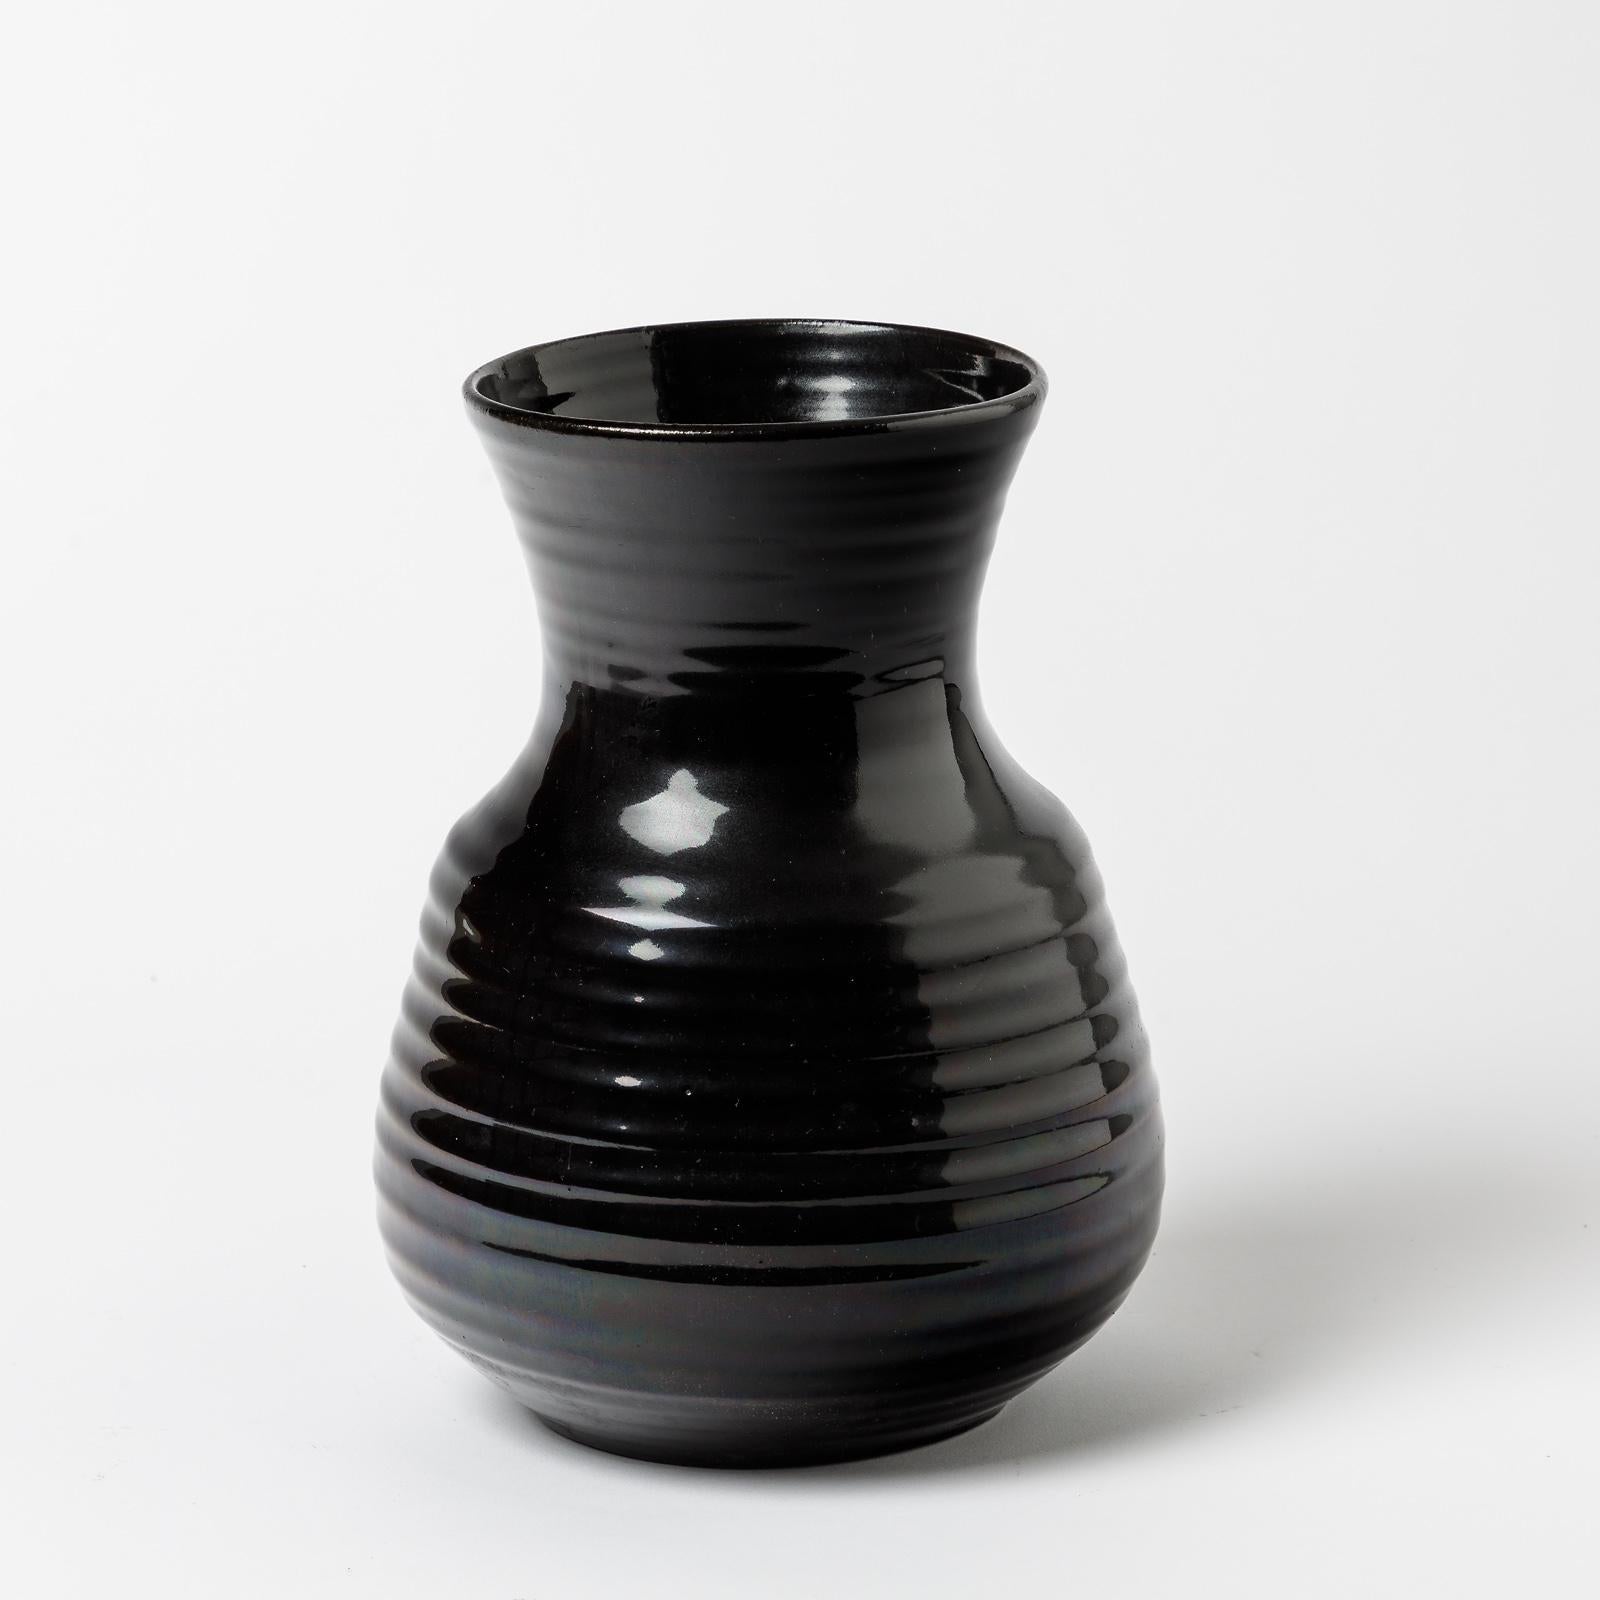 Vase en céramique avec décoration en glaçure noire par Accolay.
Conditions d'origine parfaites.
Signé 